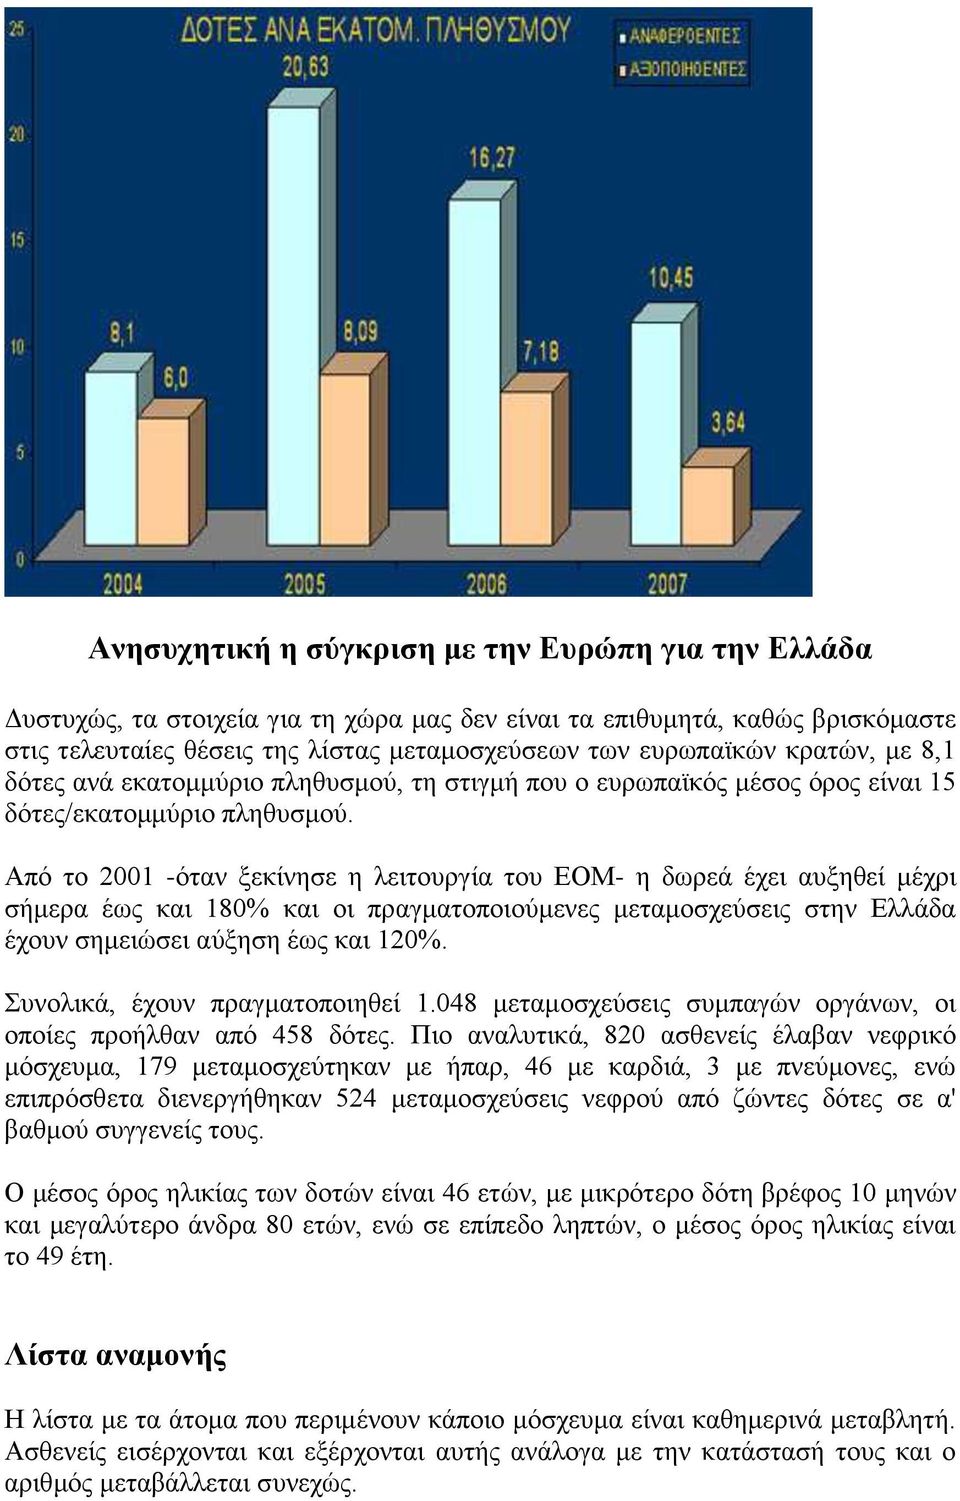 Από το 2001 -όταν ξεκίνησε η λειτουργία του ΕΟΜ- η δωρεά έχει αυξηθεί μέχρι σήμερα έως και 180% και οι πραγματοποιούμενες μεταμοσχεύσεις στην Ελλάδα έχουν σημειώσει αύξηση έως και 120%.